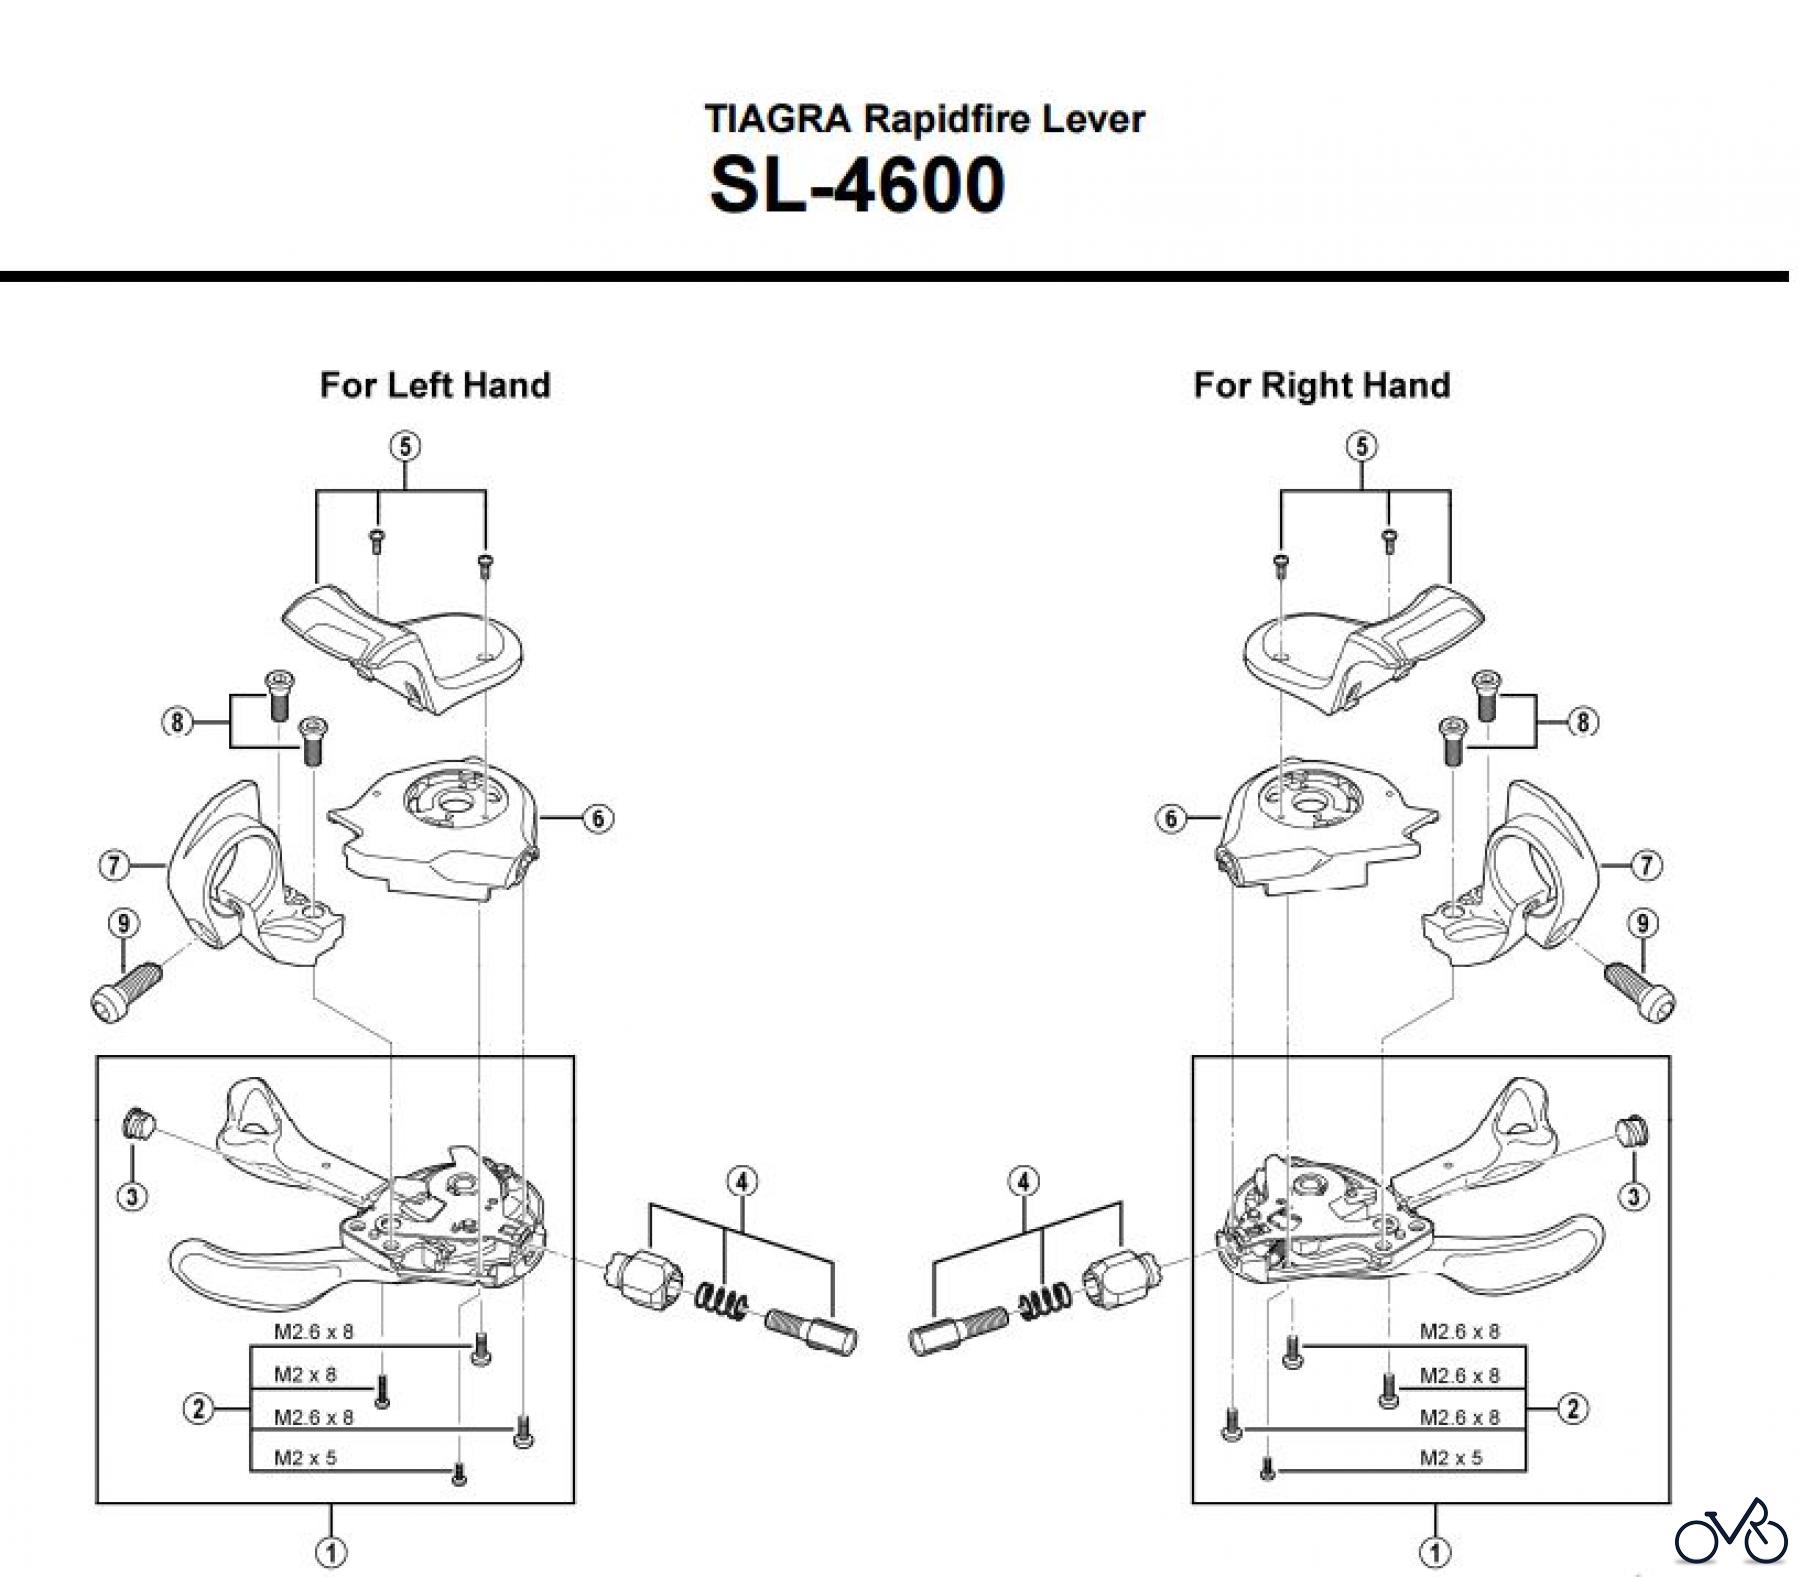  Shimano SL Shift Lever - Schalthebel SL-4600 TIAGRA Rapidfire Lever